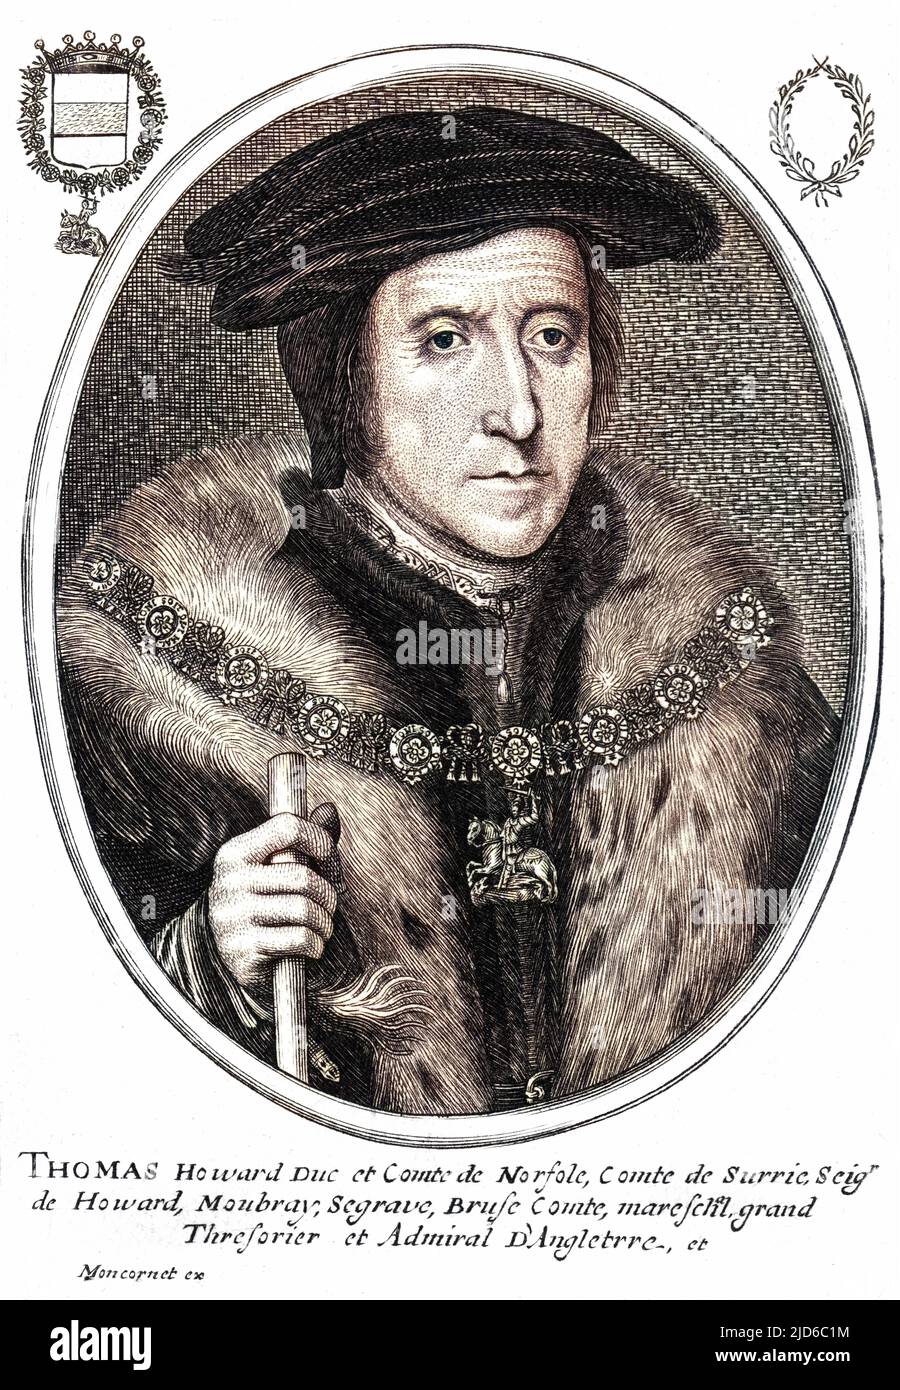 THOMAS HOWARD, dritter Herzog von NORFOLK Staatsmann, lord Treasurer, lord High Admiral etc. Colorierte Version von : 10167572 Datum: 1473 - 155 Stockfoto